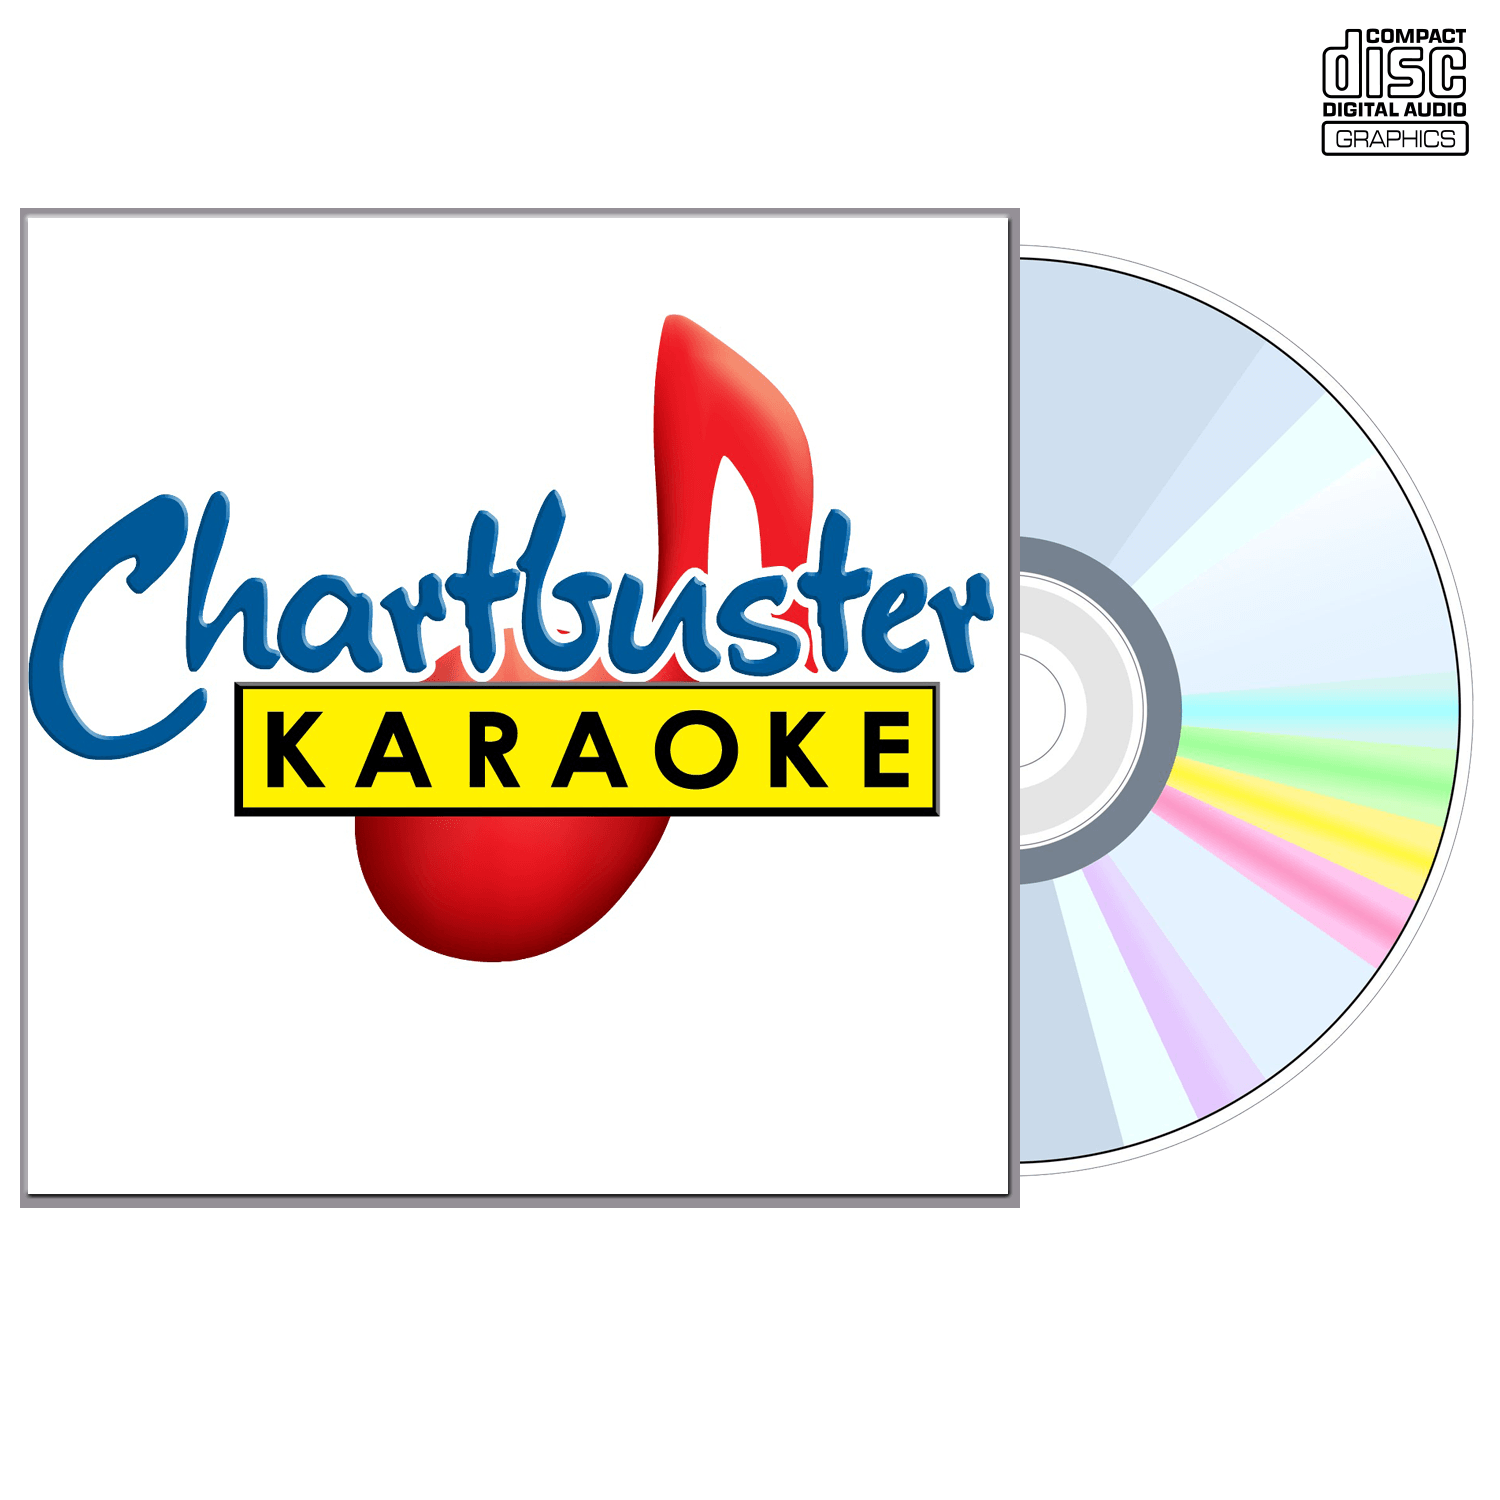 Lisa Loeb - CD+G - Chartbuster Karaoke - Karaoke Home Entertainment